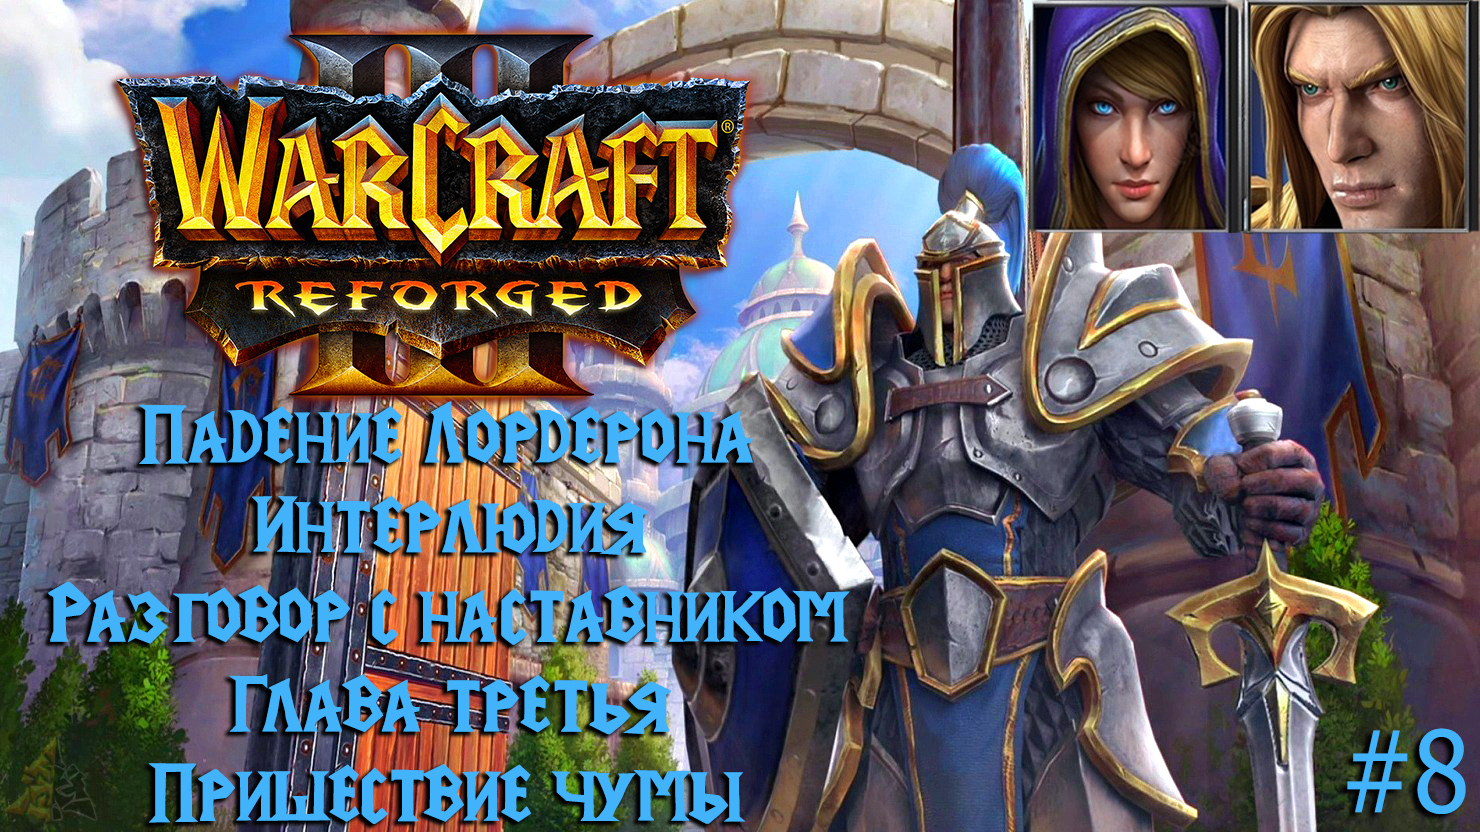 Warcraft III: Reforged | Падение Лордерона | Глава третья | Пришествие чумы | #8